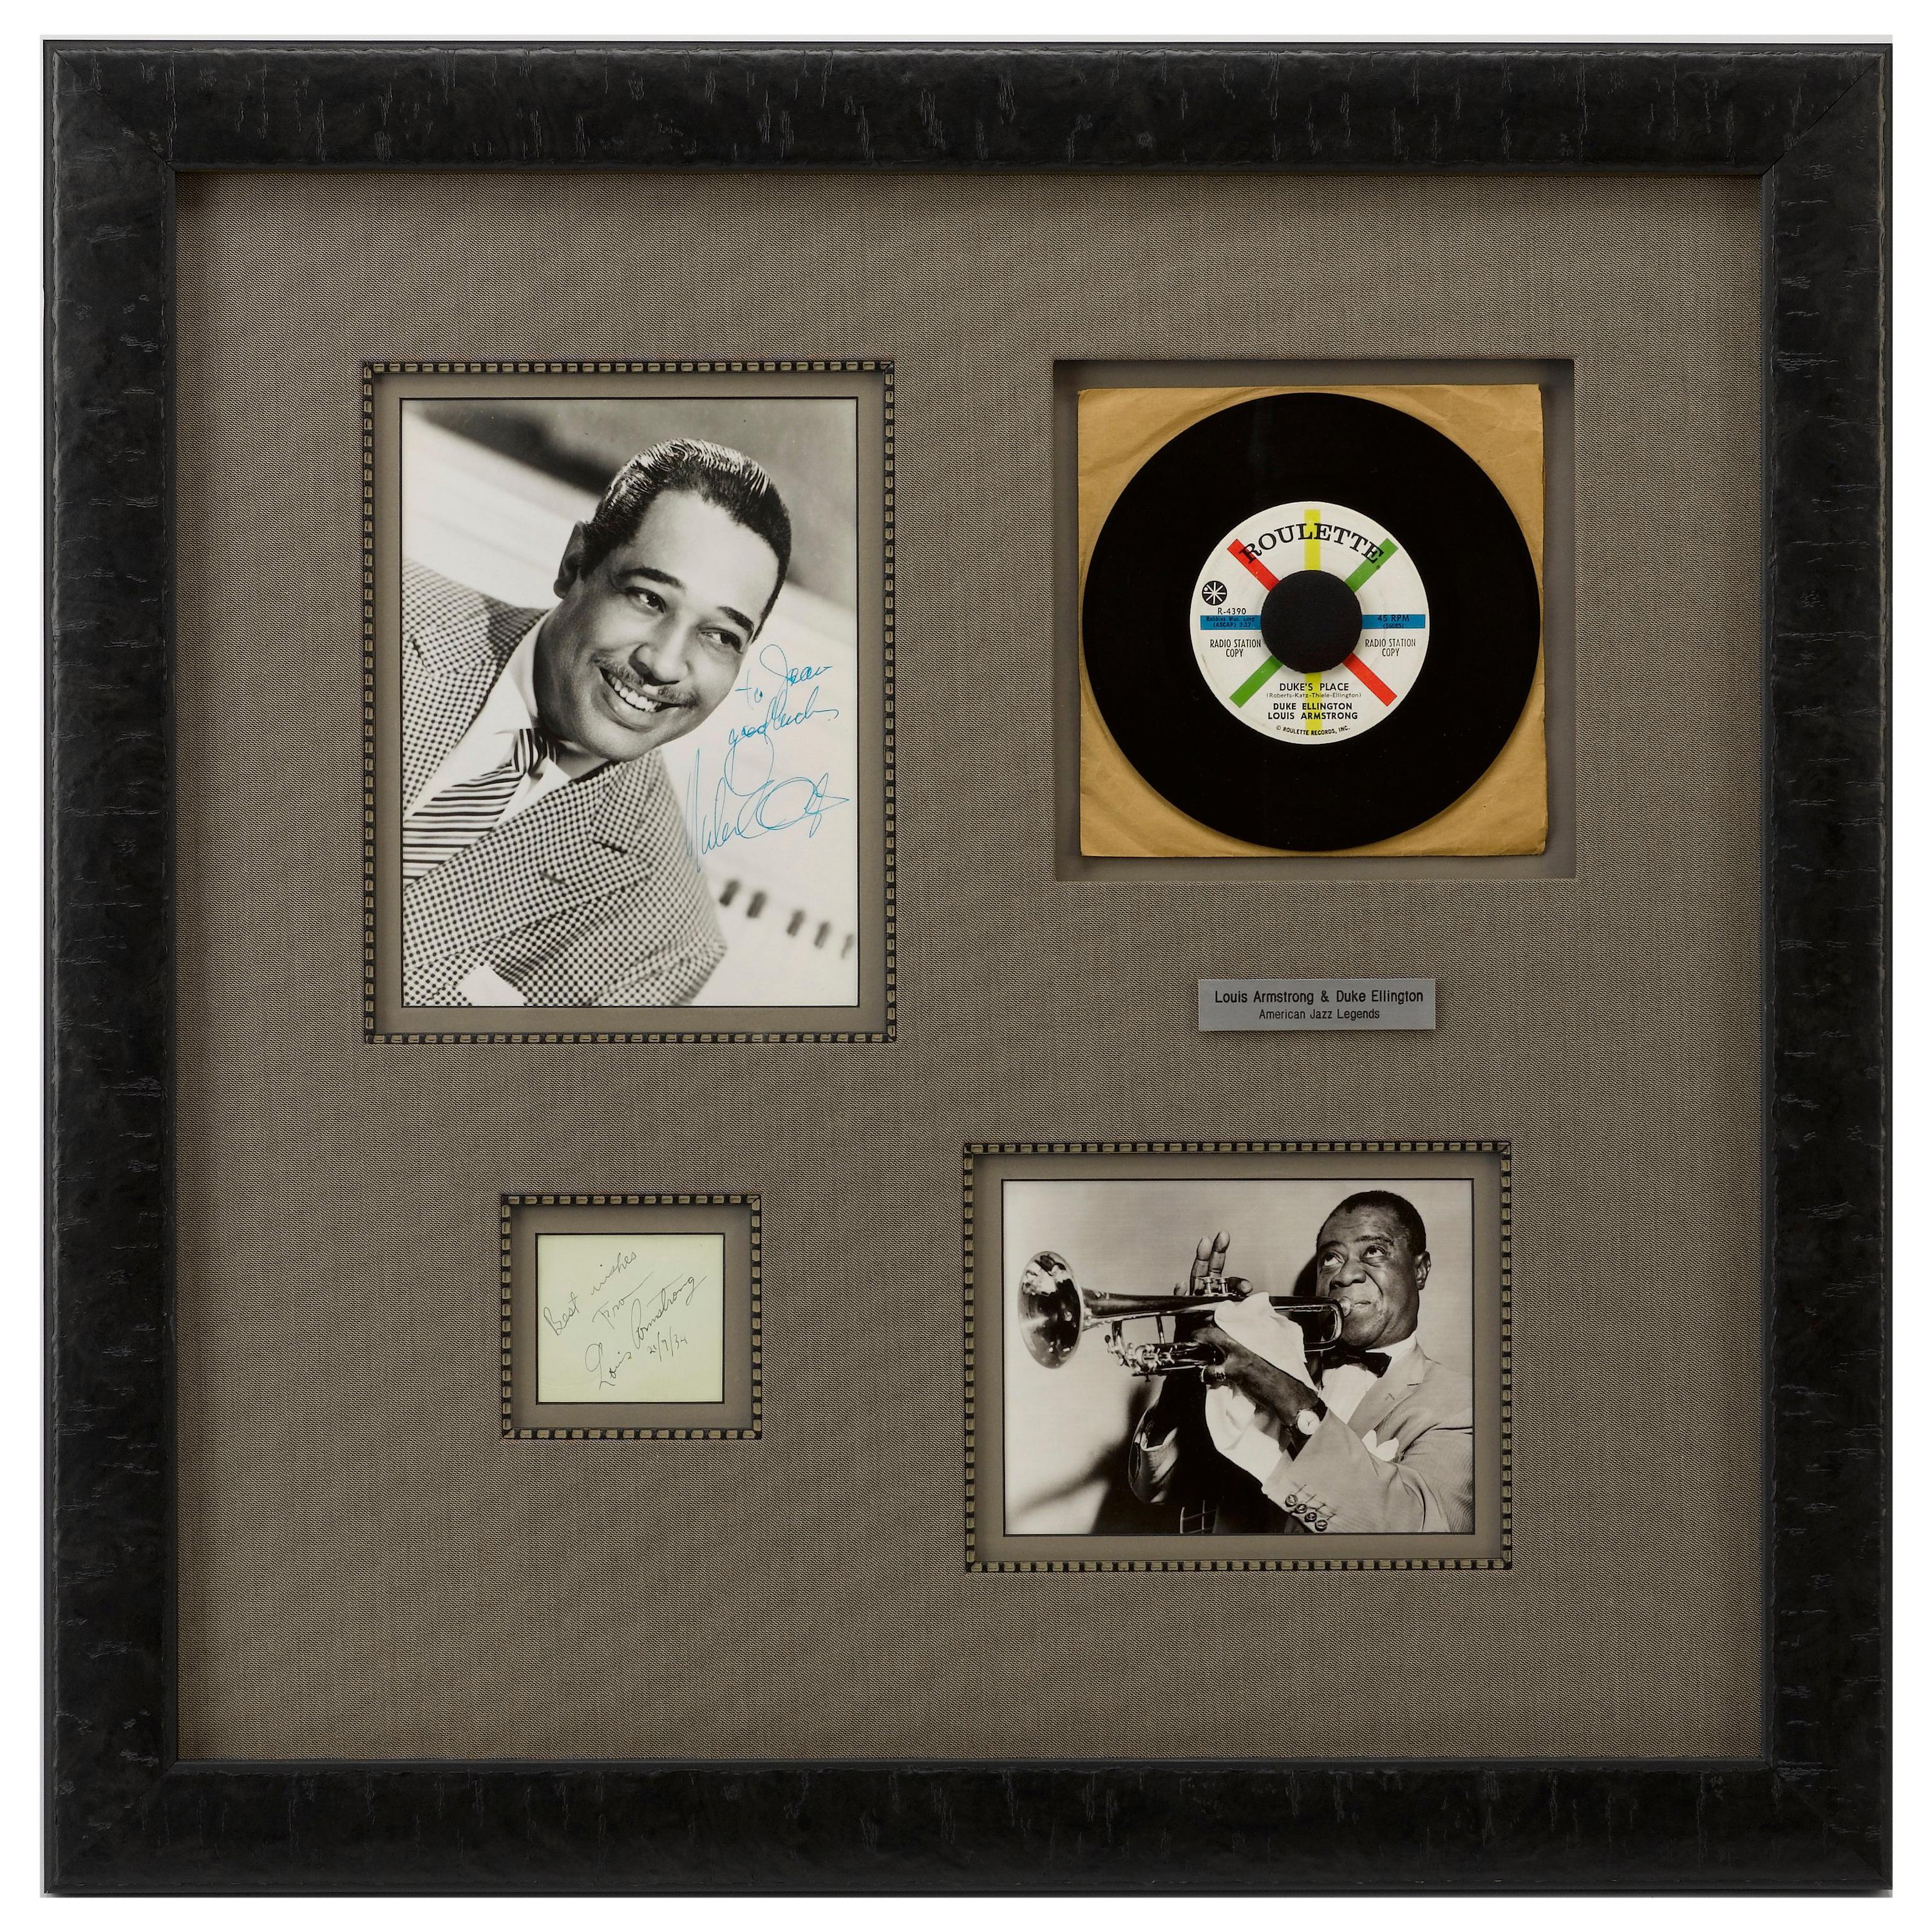 Louis Armstrong and Duke Ellington American Jazz Legends Autographs